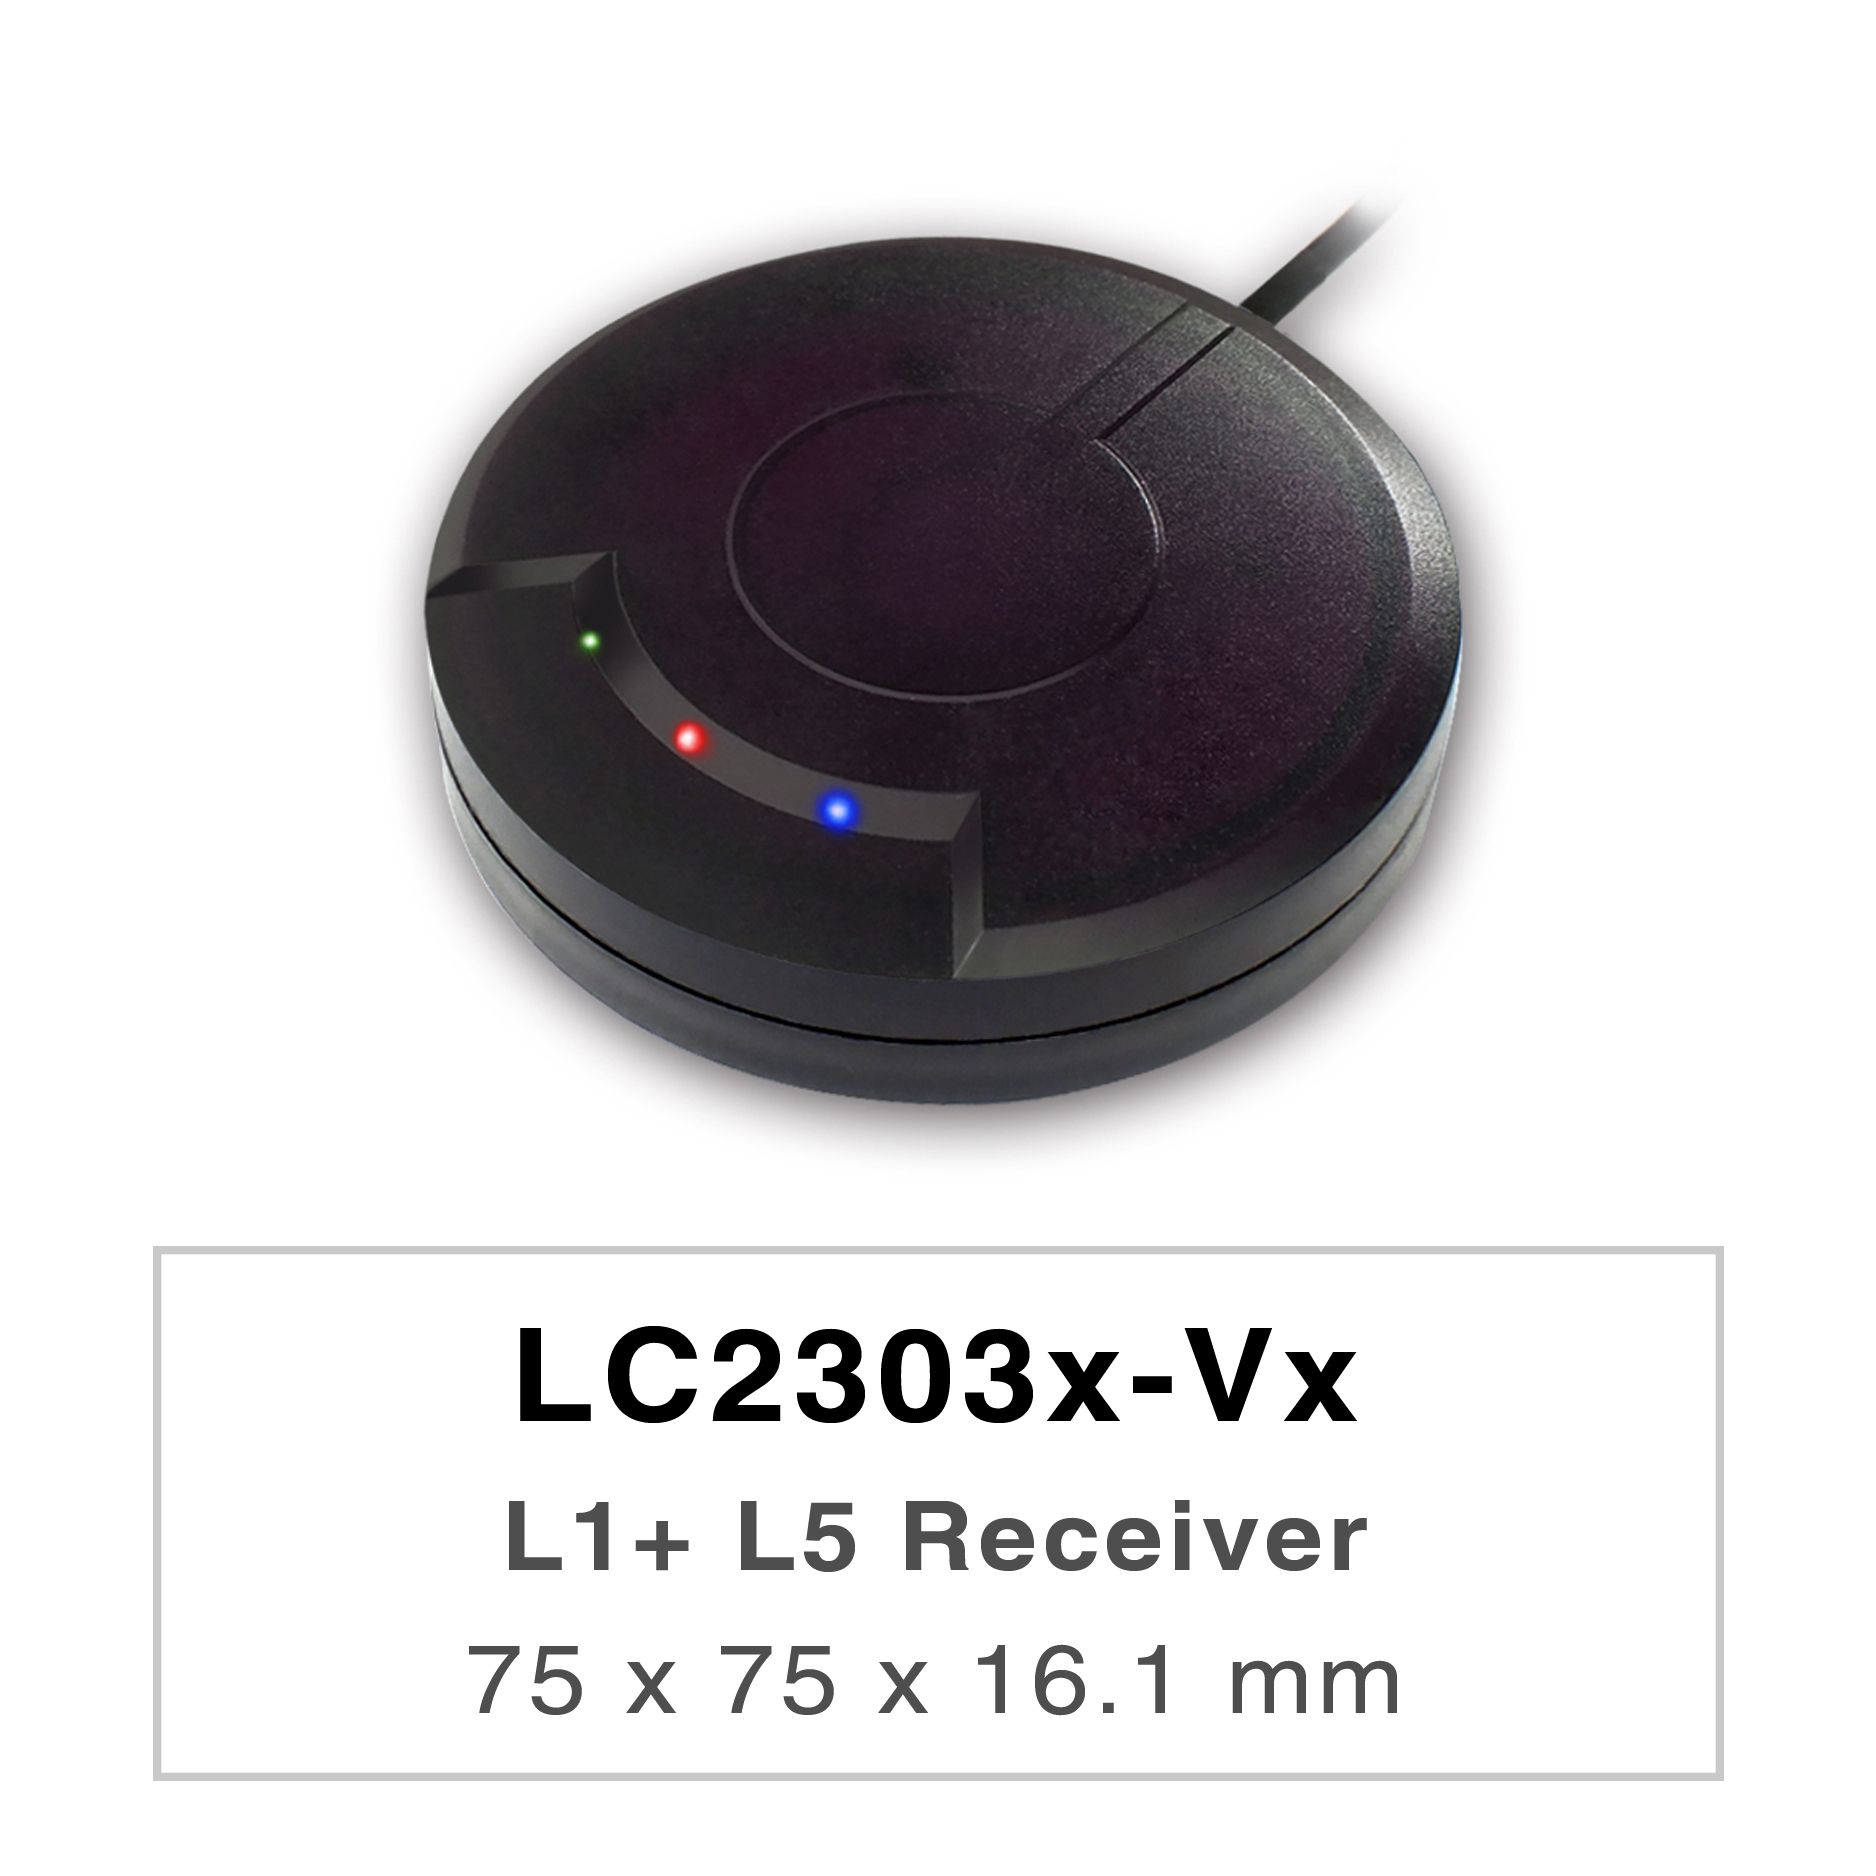 Die Produkte der LC2303x-Vx-Serie sind Hochleistungs-Dualband-GNSS-Empfänger (auch bekannt als GNSS-Maus), die alle globalen zivilen Navigationssysteme (GPS, GLONASS, BDS, GALILEO, QZSS und IRNSS) verfolgen können.